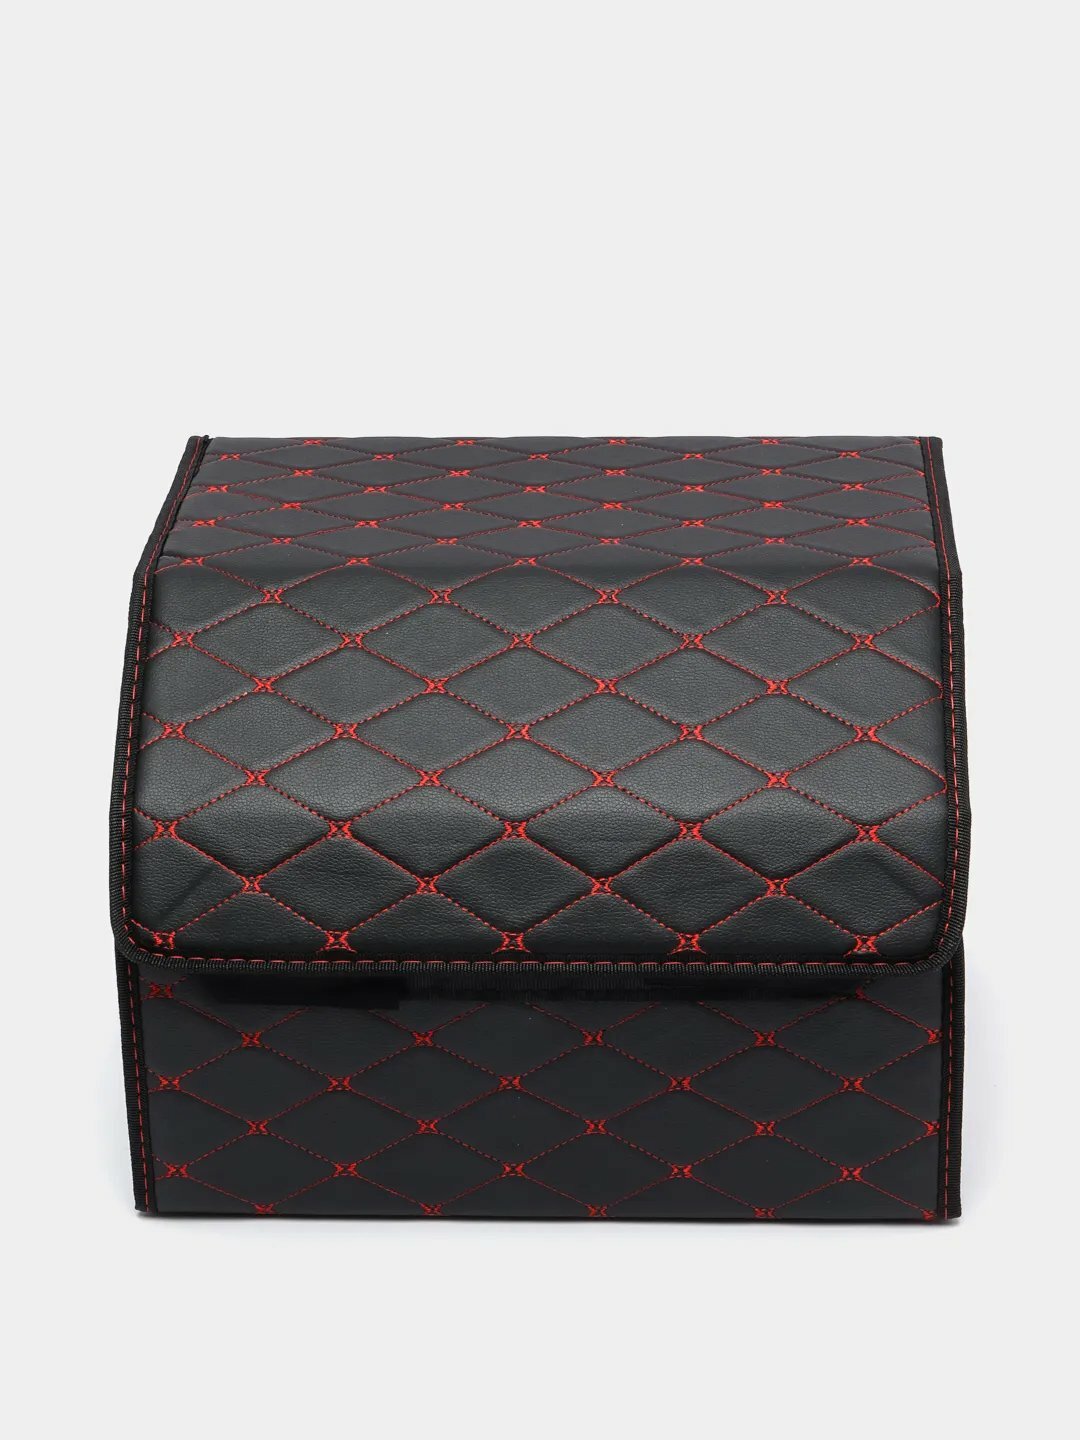 Чемодан в багажник, складной, из экокожи цвет размер Черный с красной строчкой 30х30х30